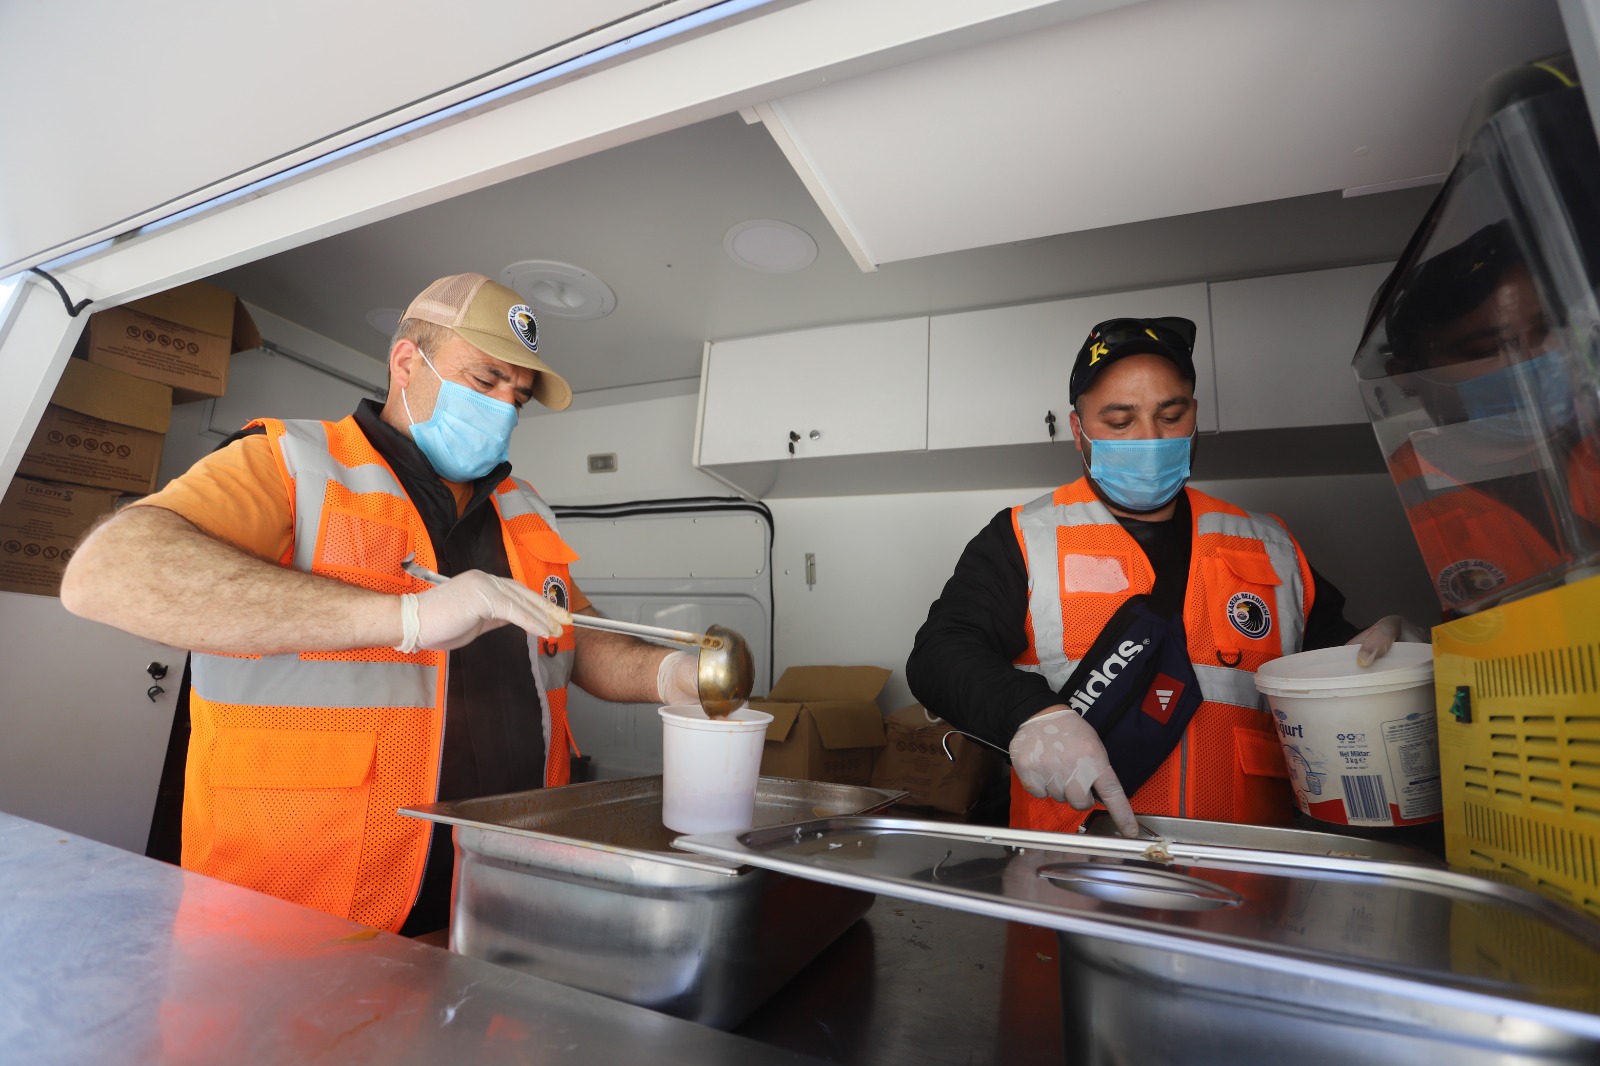 Kartal Belediyesi Hatay’da 225 bin kişilik yemek dağıttı